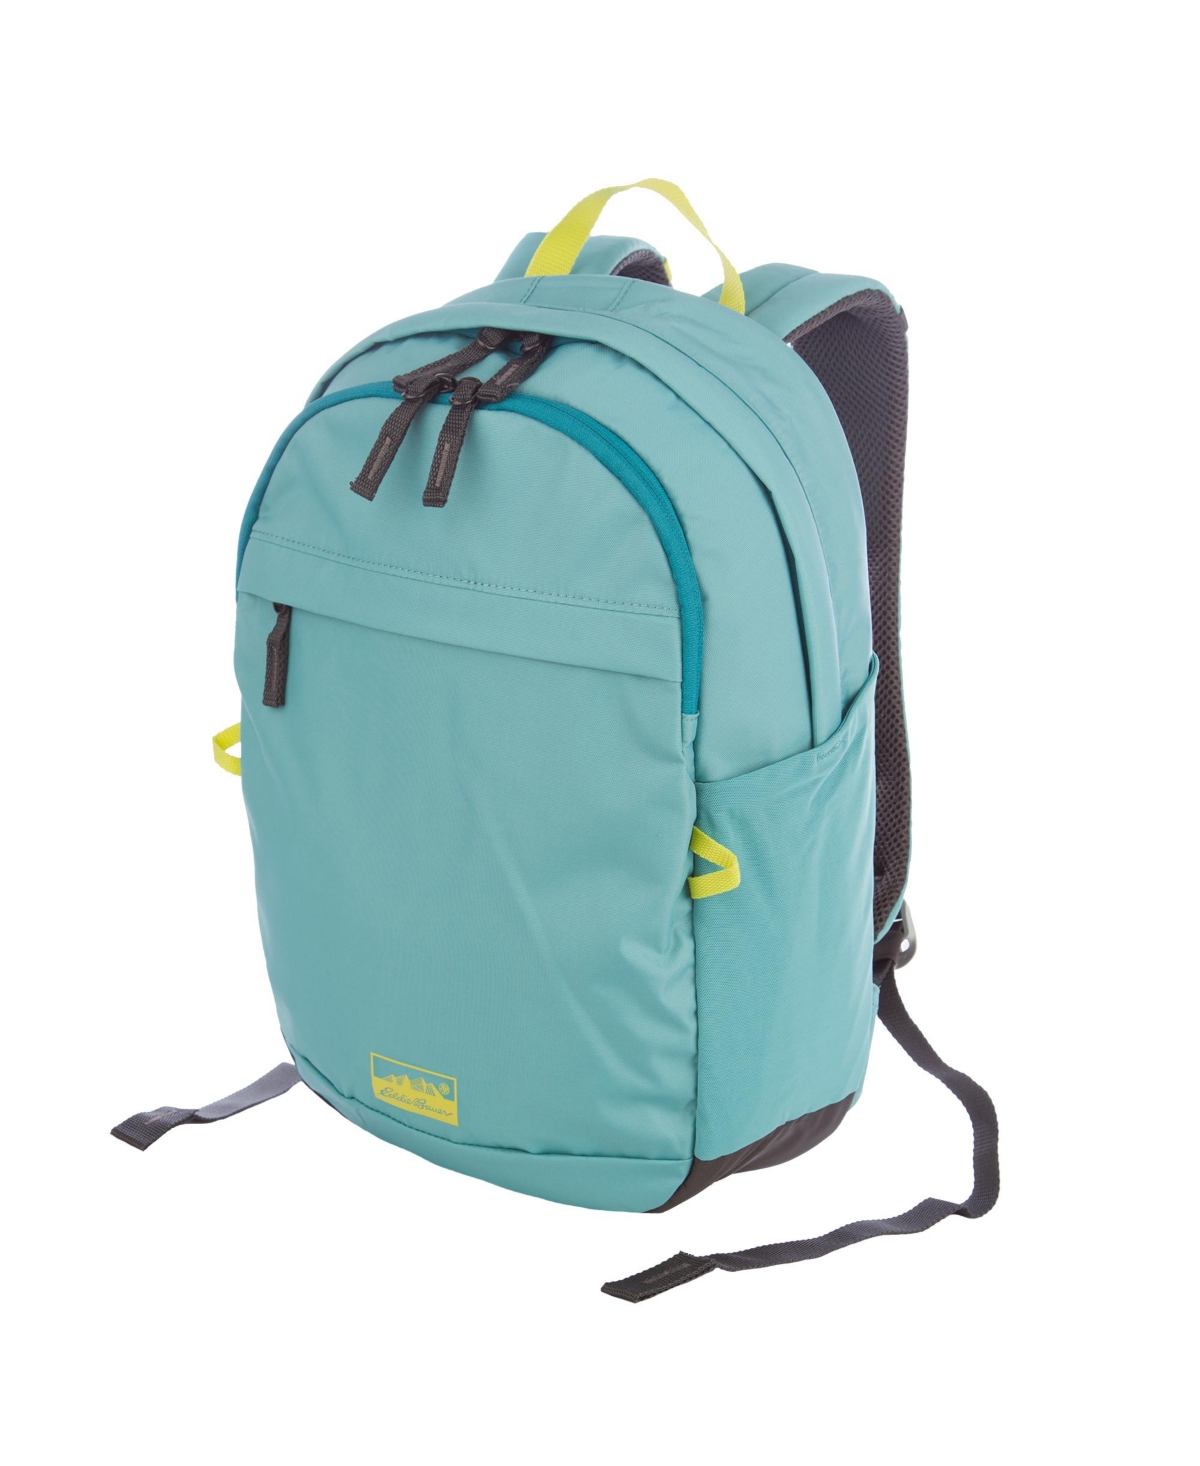 20L Venture Backpack Daypack - Dusty Jade